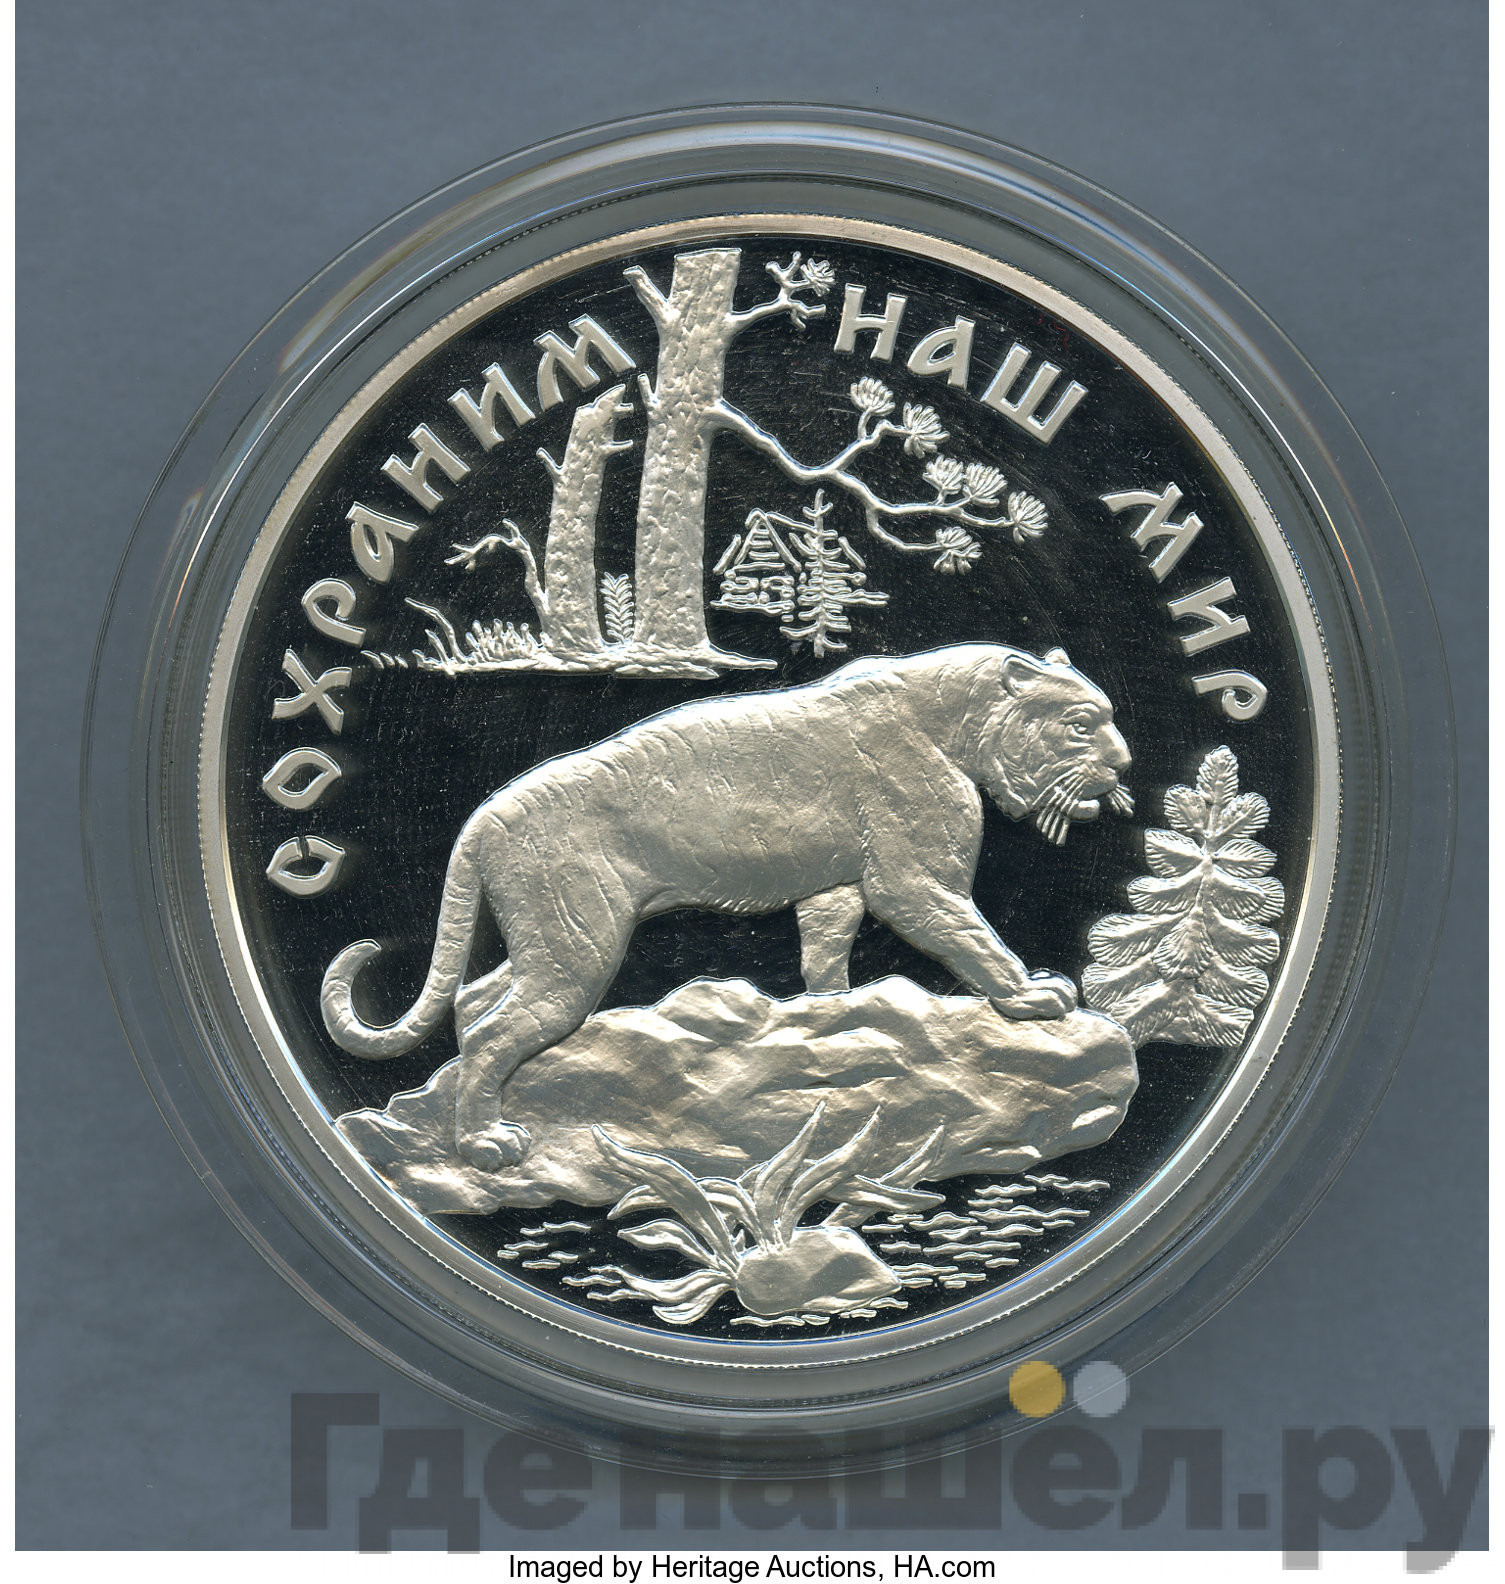 100 рублей 1996 года ЛМД Золото Сохраним наш мир амурский тигр